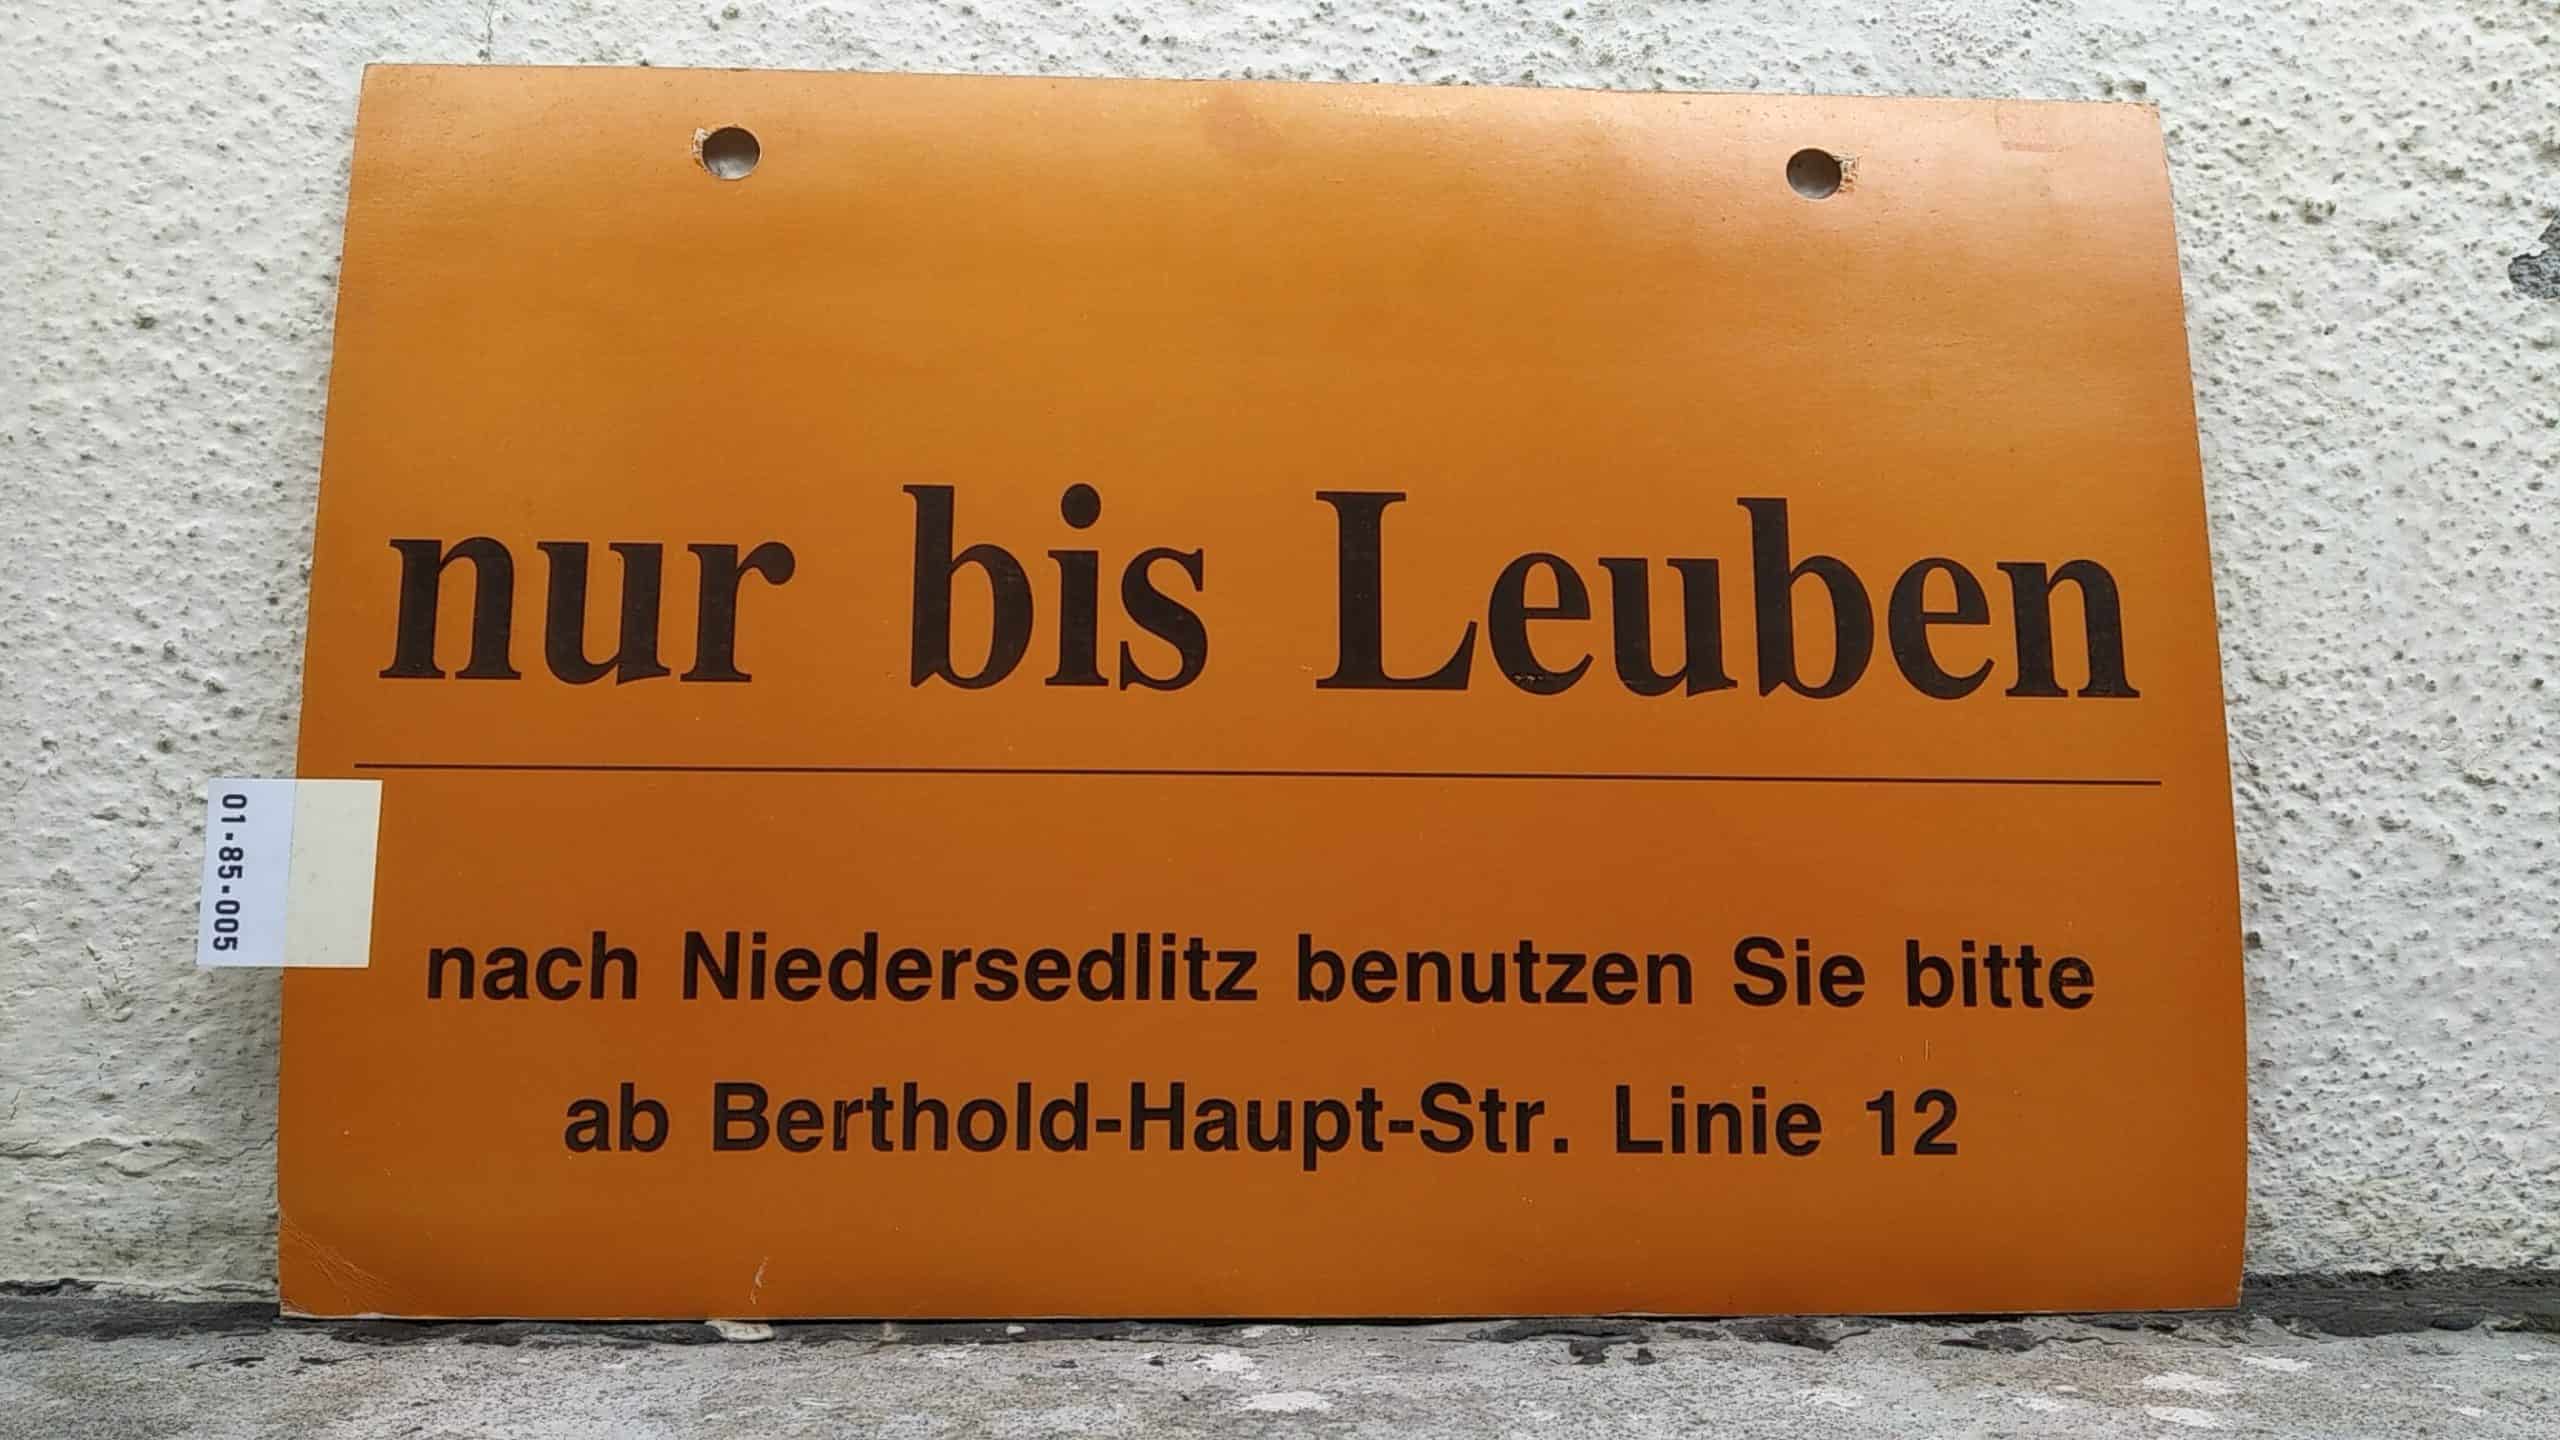 Ein seltenes Straßenbahn-Umleitungsschild aus Dresden: nur bis Leuben nach Niedersedlitz benutzen Sie bitte ab Bertold-Haupt-Str. Linie 12